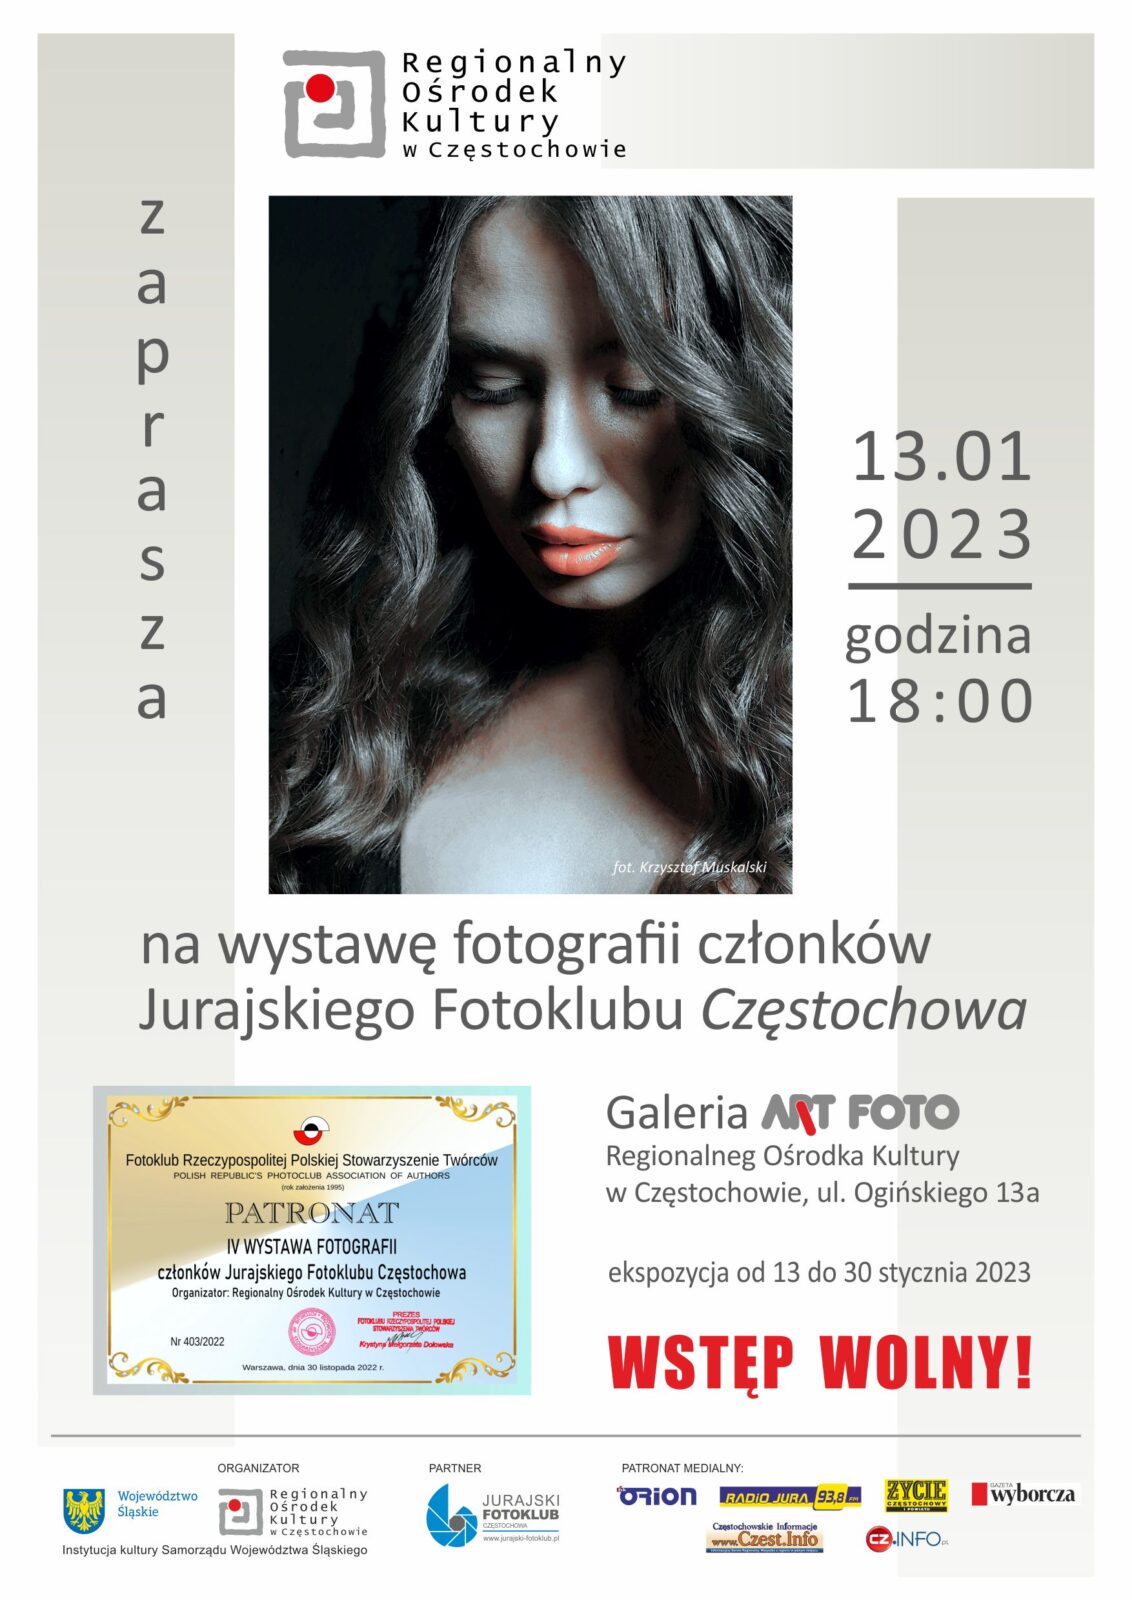 Regionalny Ośrodek Kultury. Wystawa członków Jurajskiego Fotoklubu Częstochowa 1